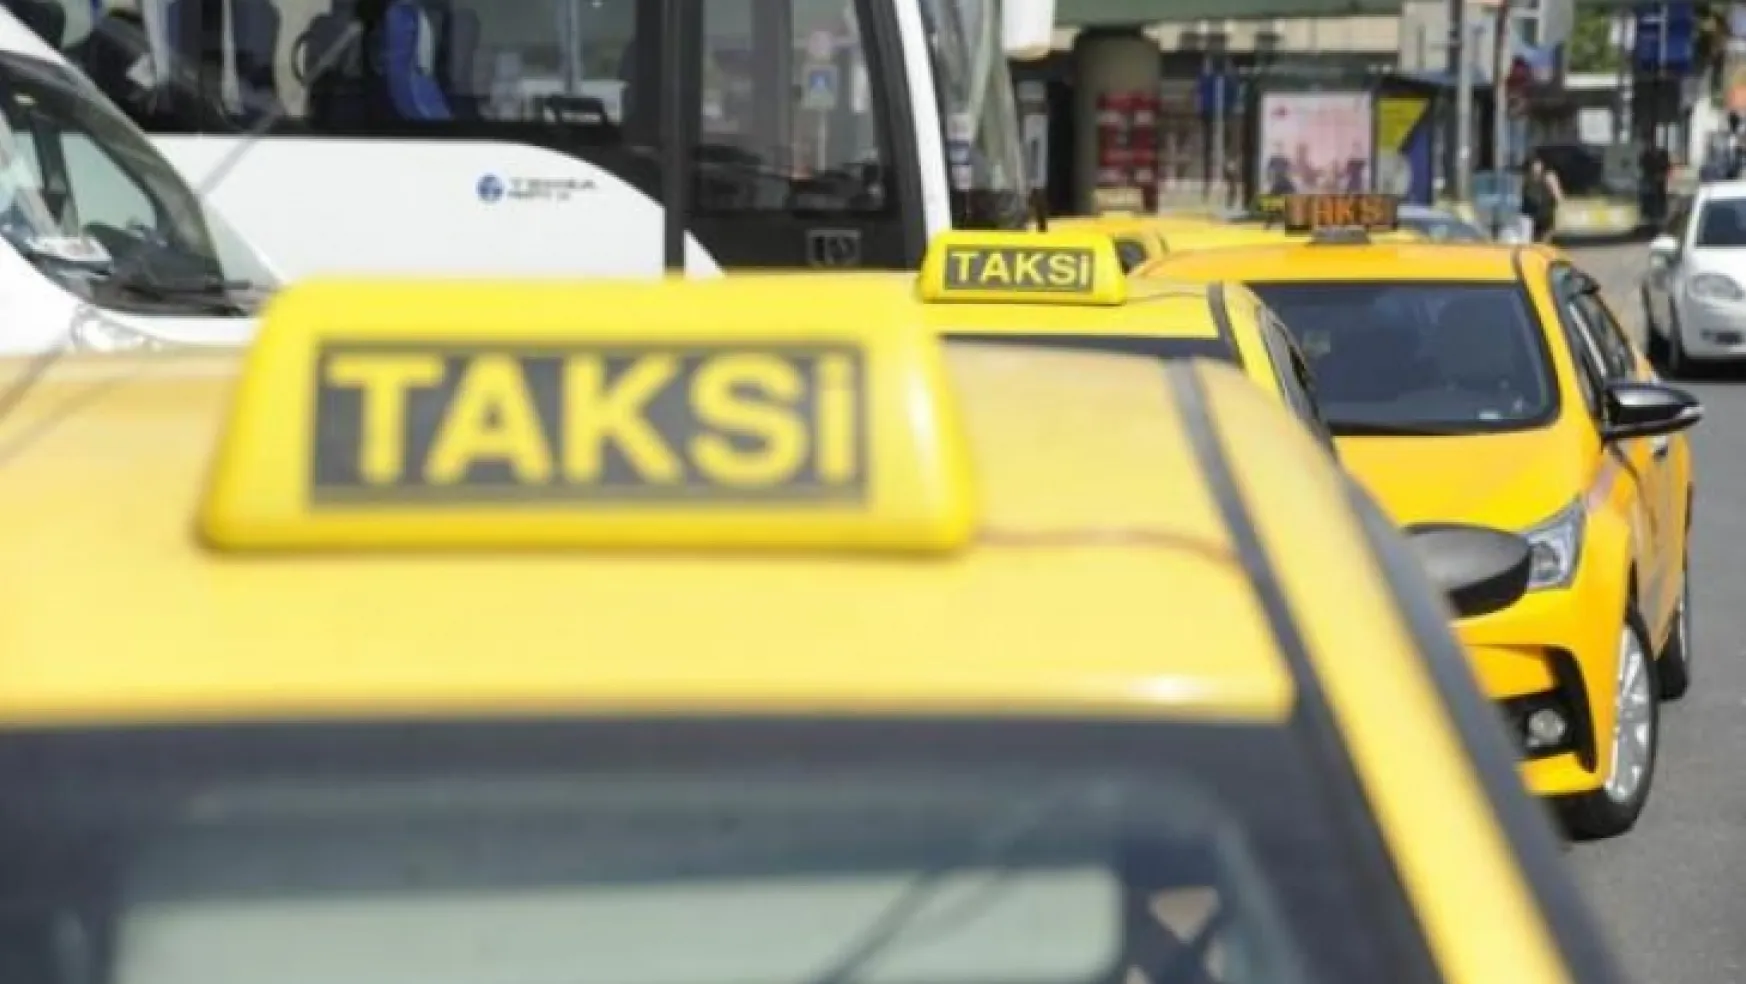 Bakanlık'tan taksimetre güncelleme fiyatlarına ilişkin inceleme başvurusu